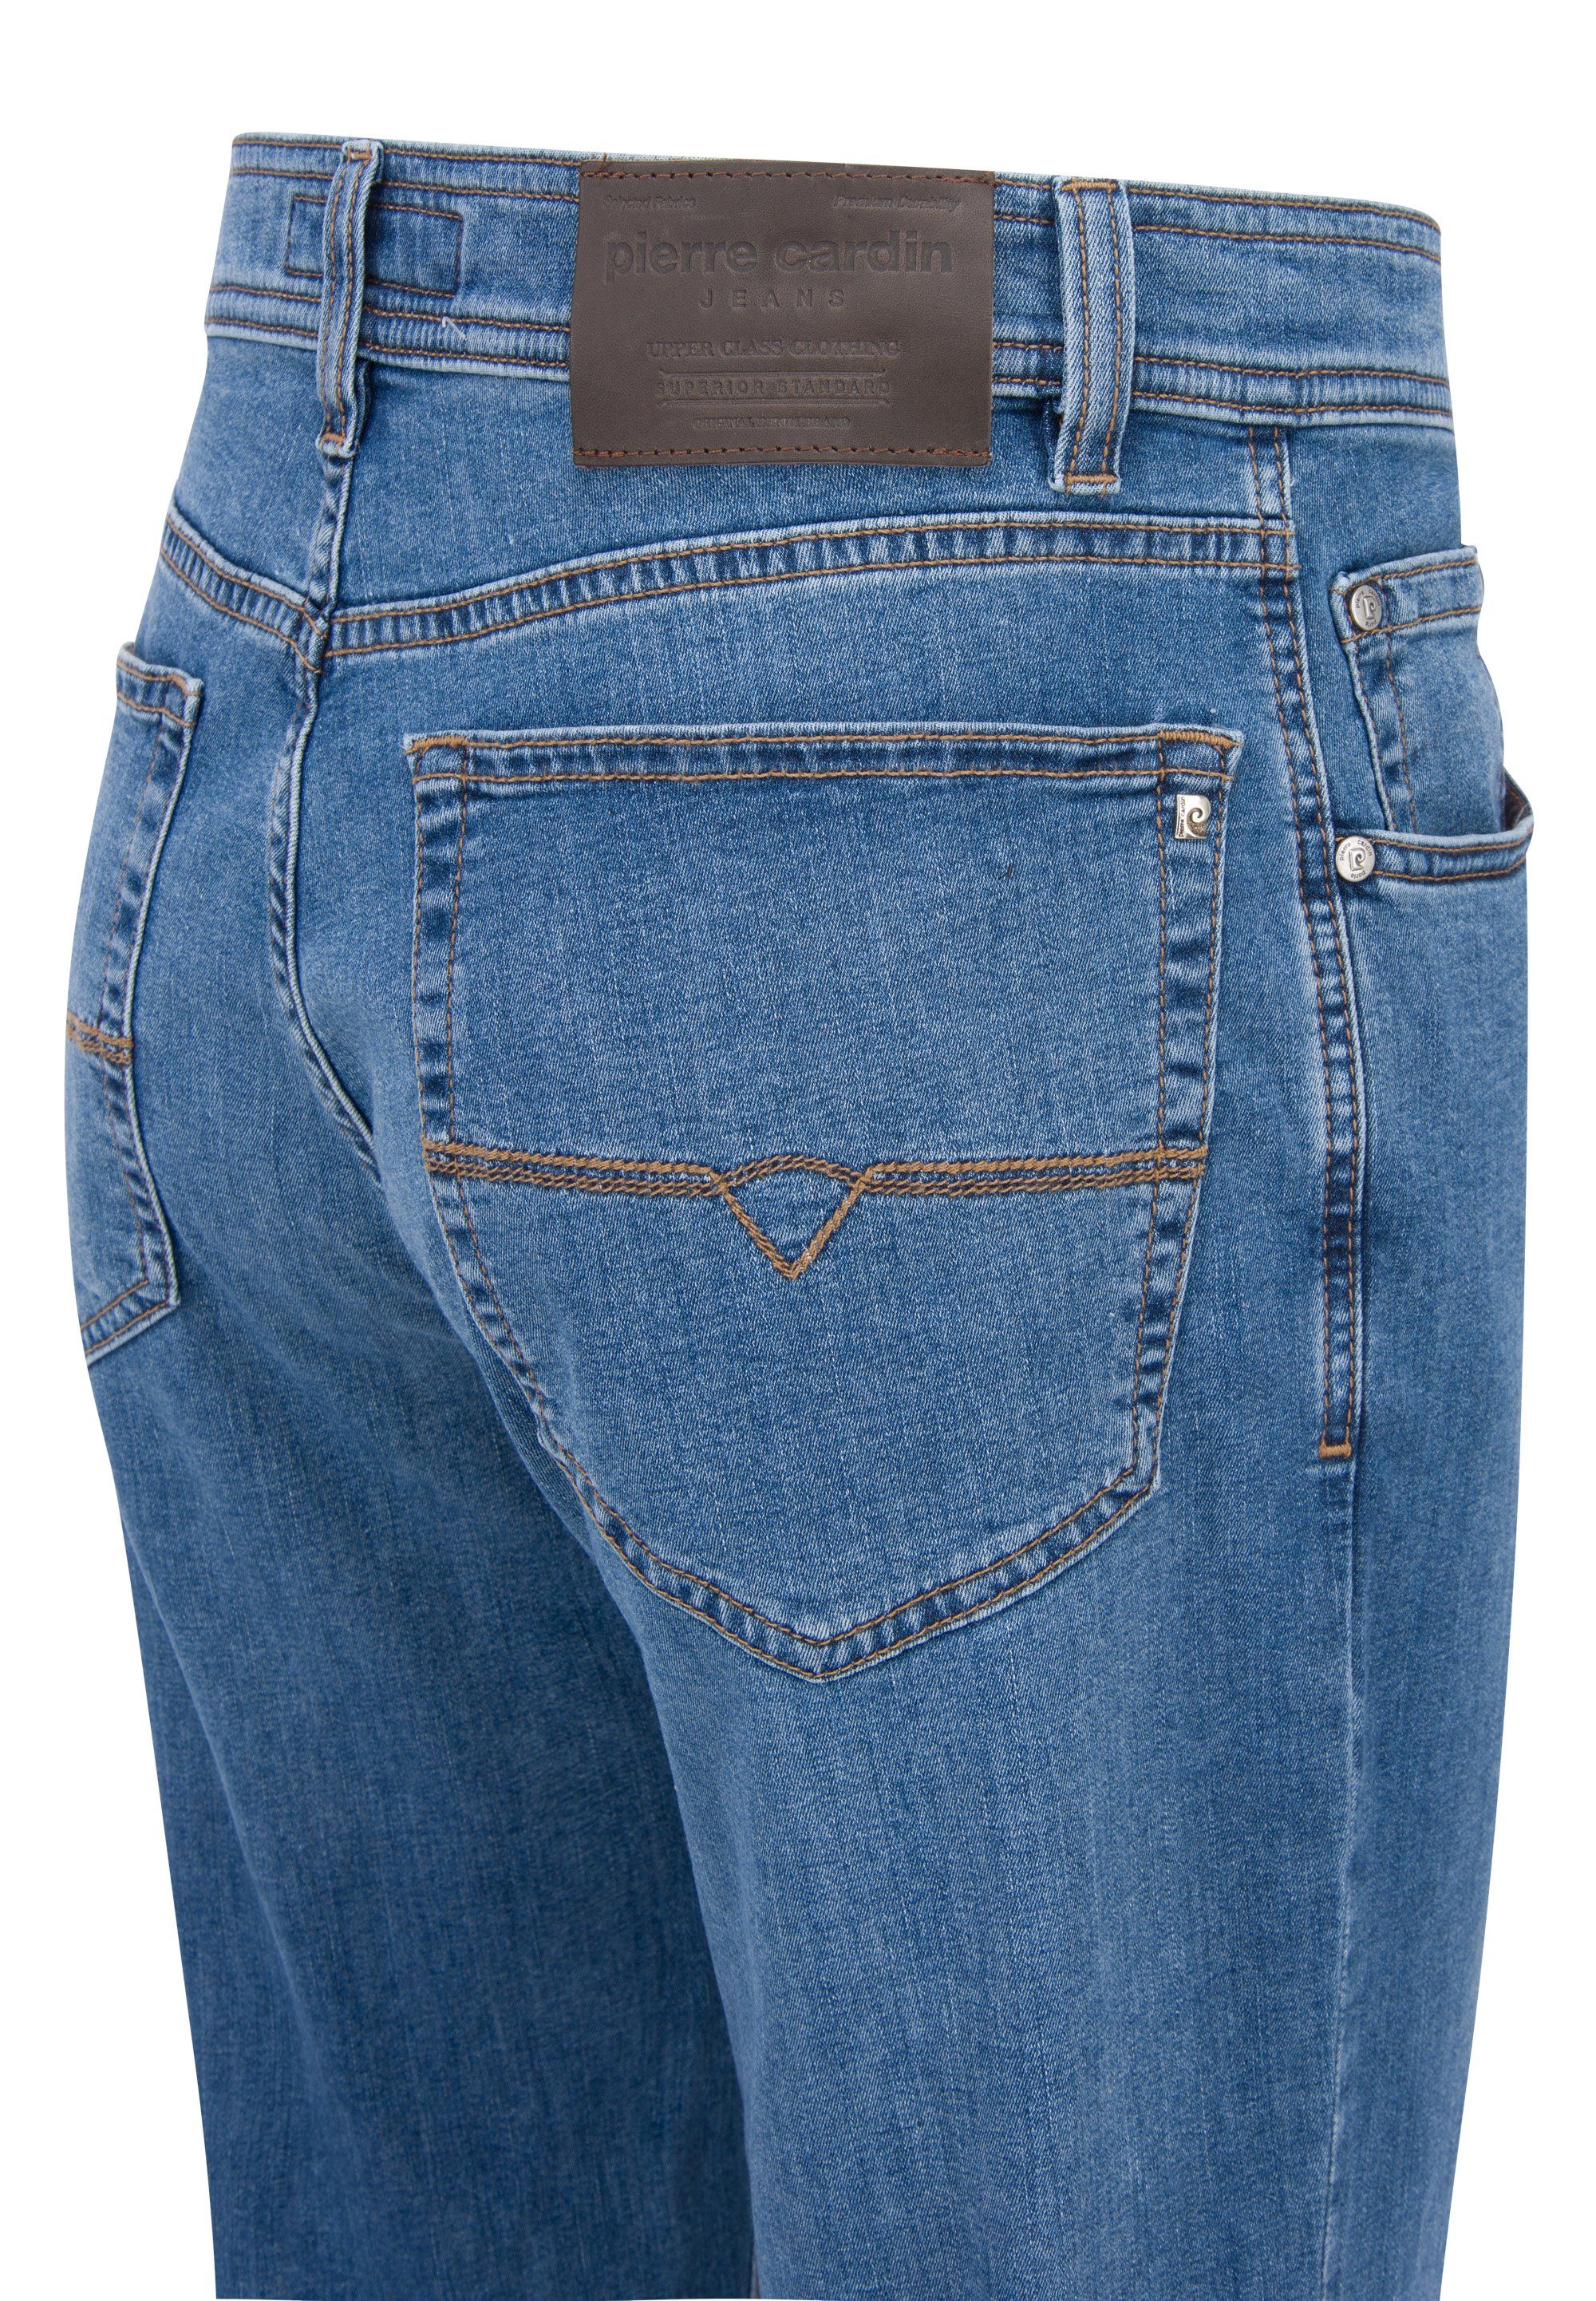 Cardin 5-Pocket-Jeans blue Pierre 3231 7301.06 mid DIJON used CARDIN PIERRE